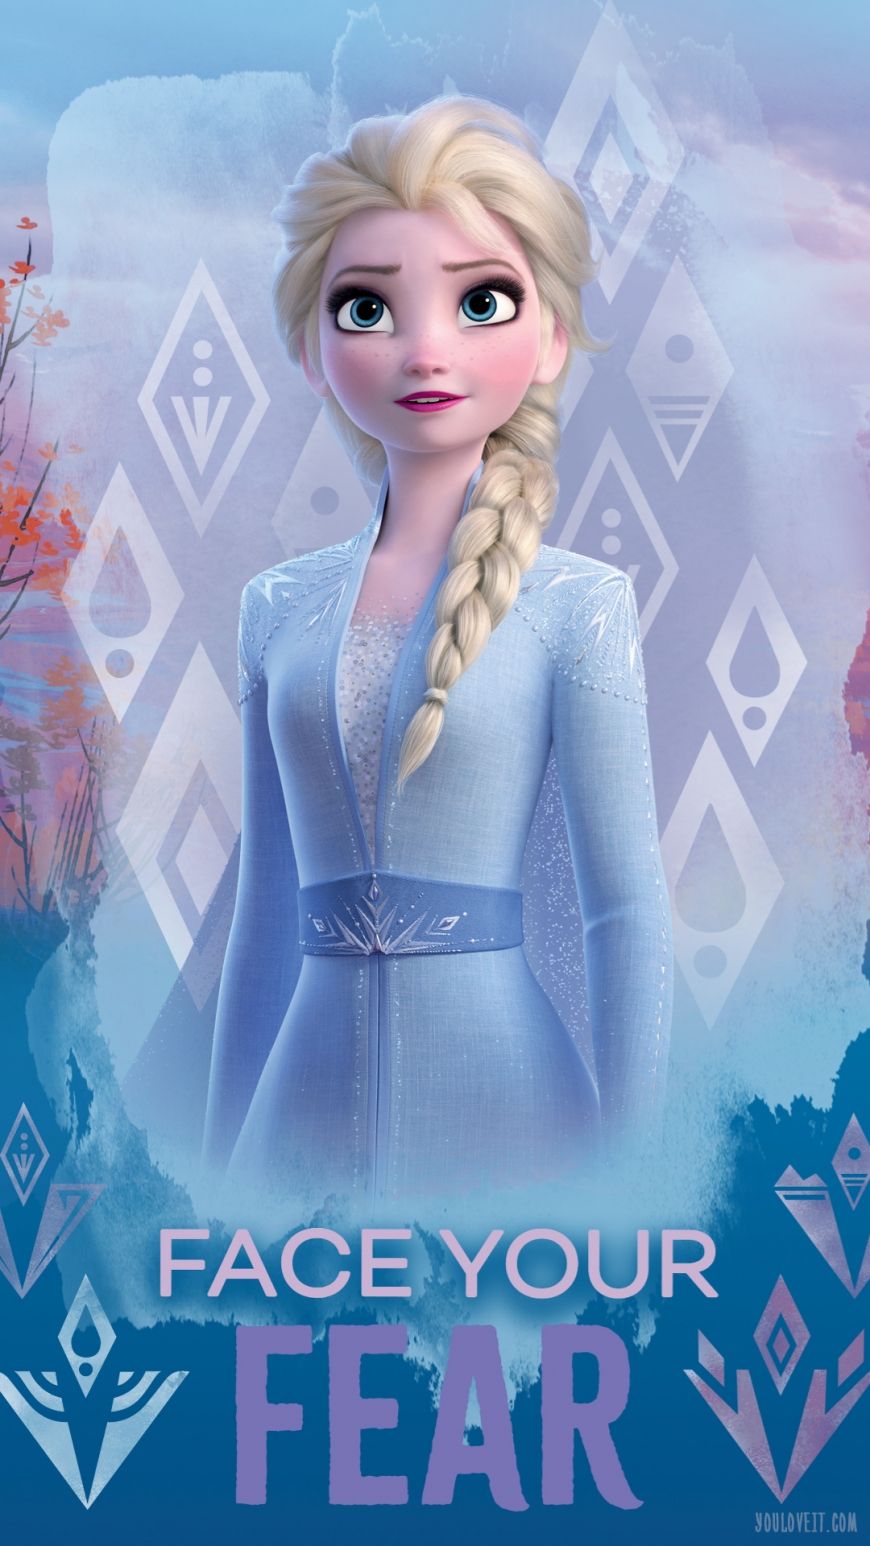 Big Frozen 2 phone wallpaper with Elsa. Frozen